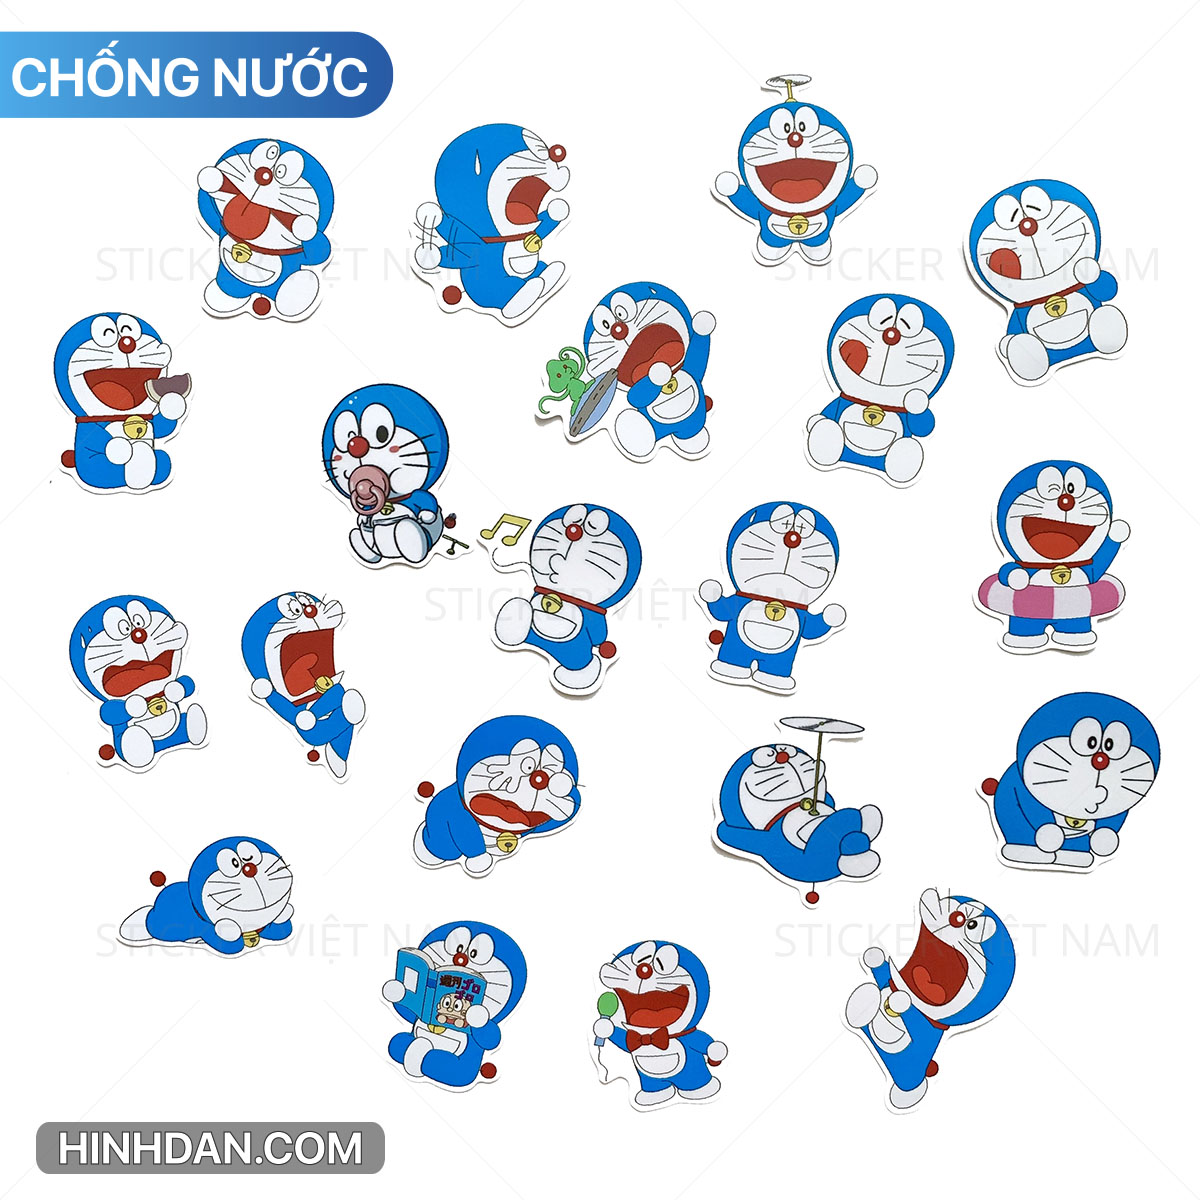 Sticker Doraemon: Bộ sưu tập những tấm túi xách, áo thun hay tập viết được trang trí bằng những Sticker Doraemon xinh xắn sẽ mang đến cho bạn cảm giác trẻ trung, tinh nghịch. Đặc biệt, khi xem hình ảnh này, bạn sẽ được trải nghiệm những cảm xúc tuyệt vời khi sở hữu những món đồ tuyệt vời này đấy! Translation: The collection of cute Doraemon stickers adorned on bags, T-shirts or notebooks will bring you a youthful and mischievous feeling. Especially, when seeing these images, you will experience wonderful feelings when owning these great items!